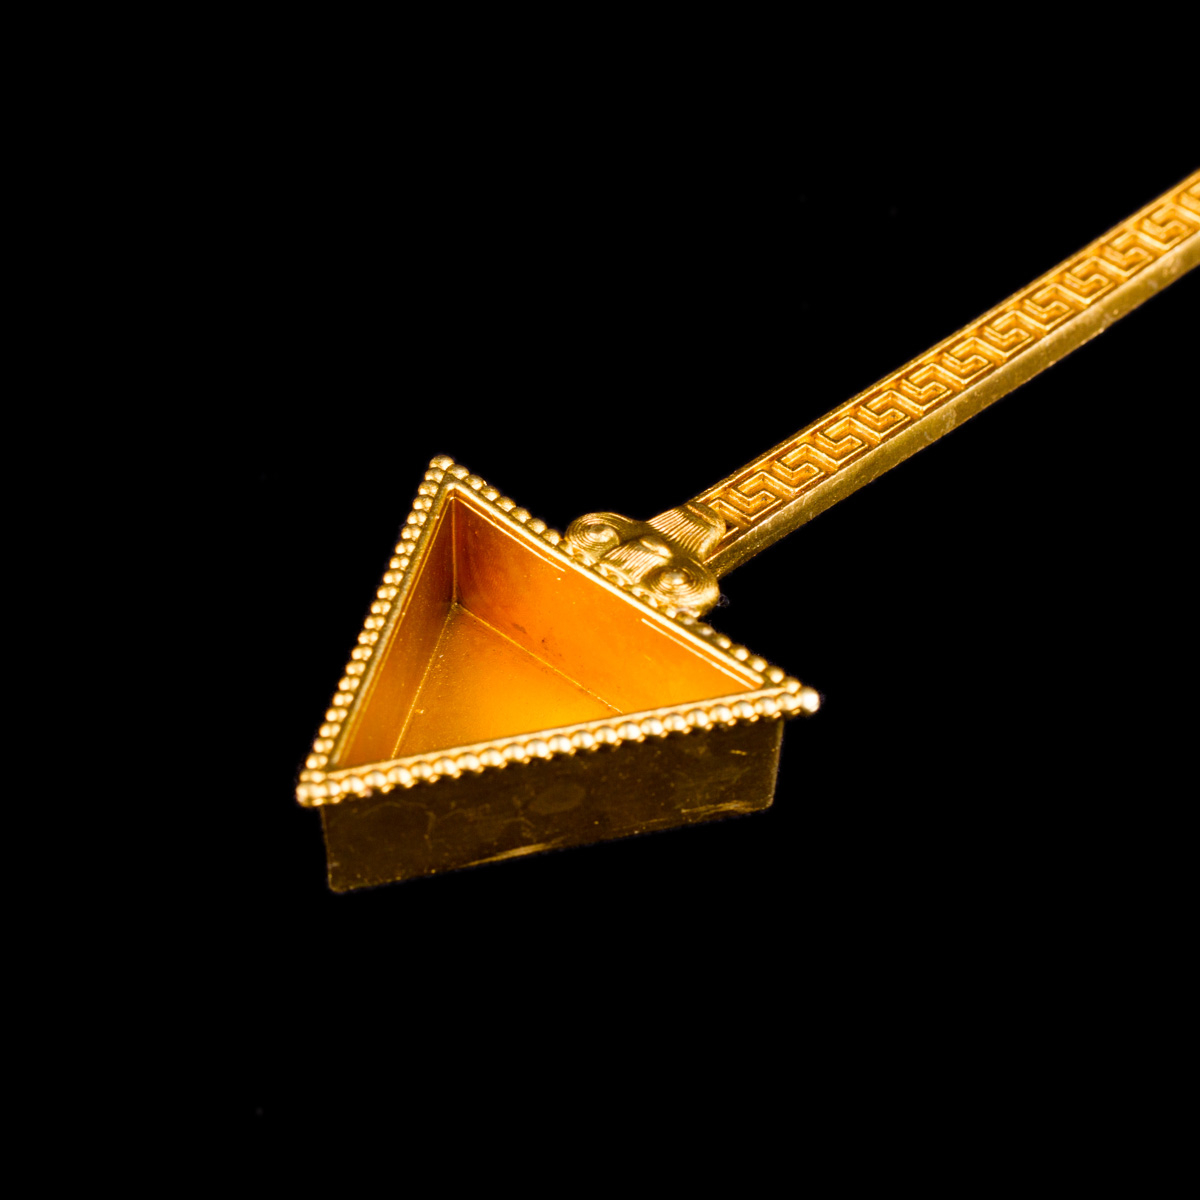 Алтарная ложка "Ракта", 23,5 см, треугольная, золотистая с красным камушком